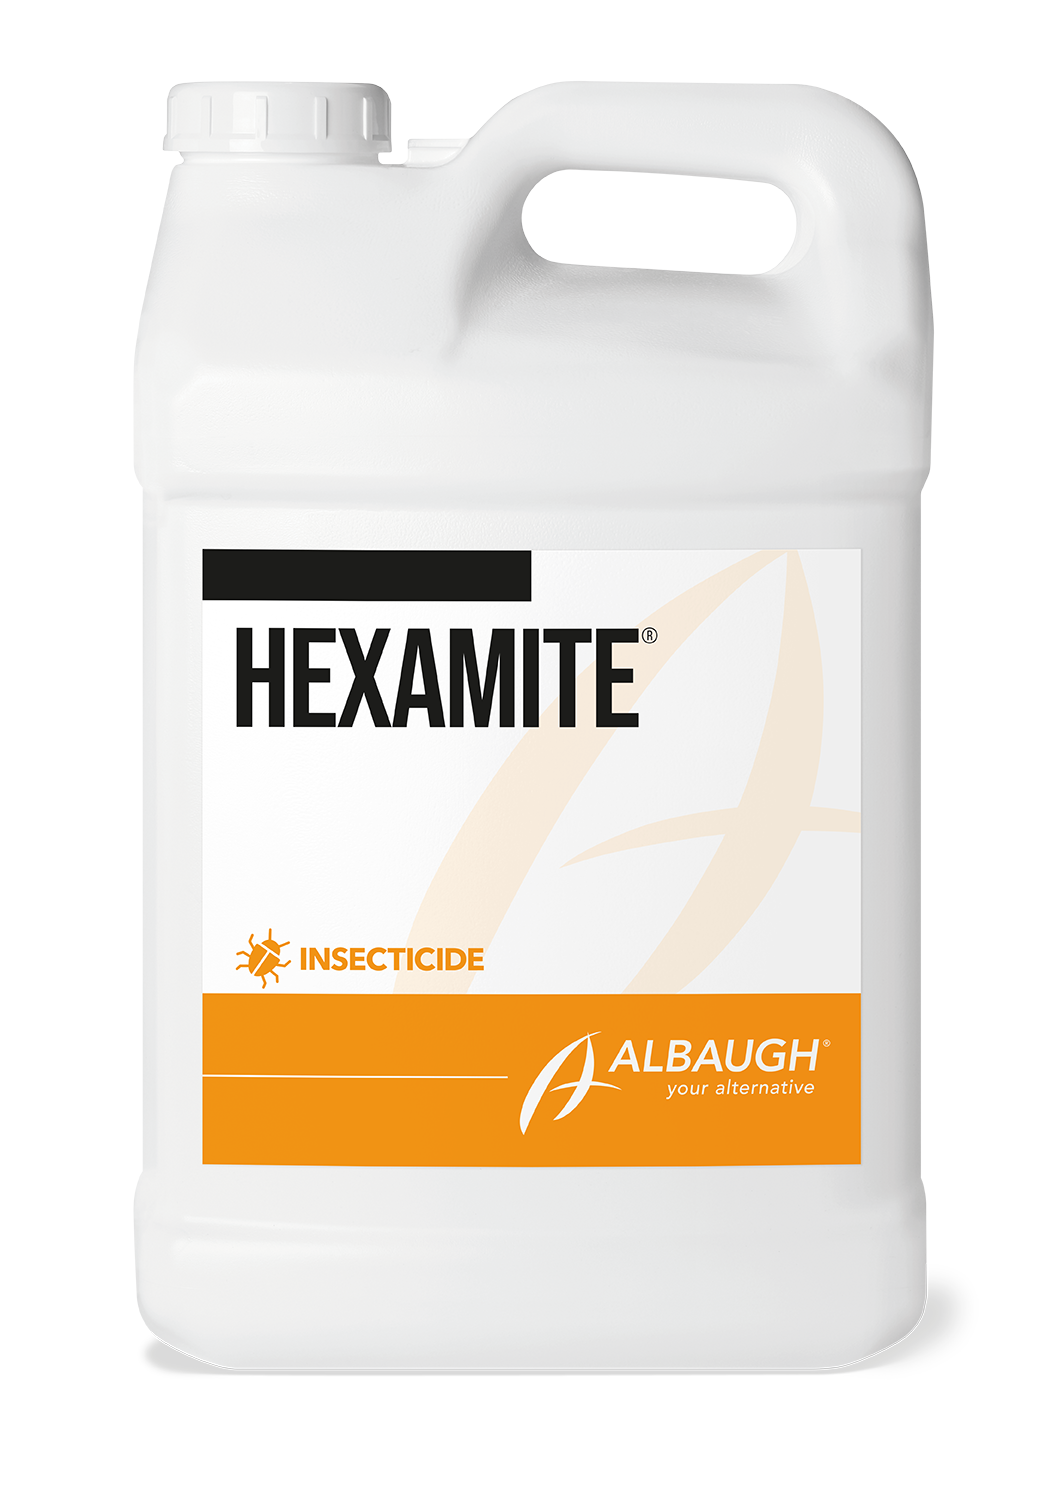 Hexamite®